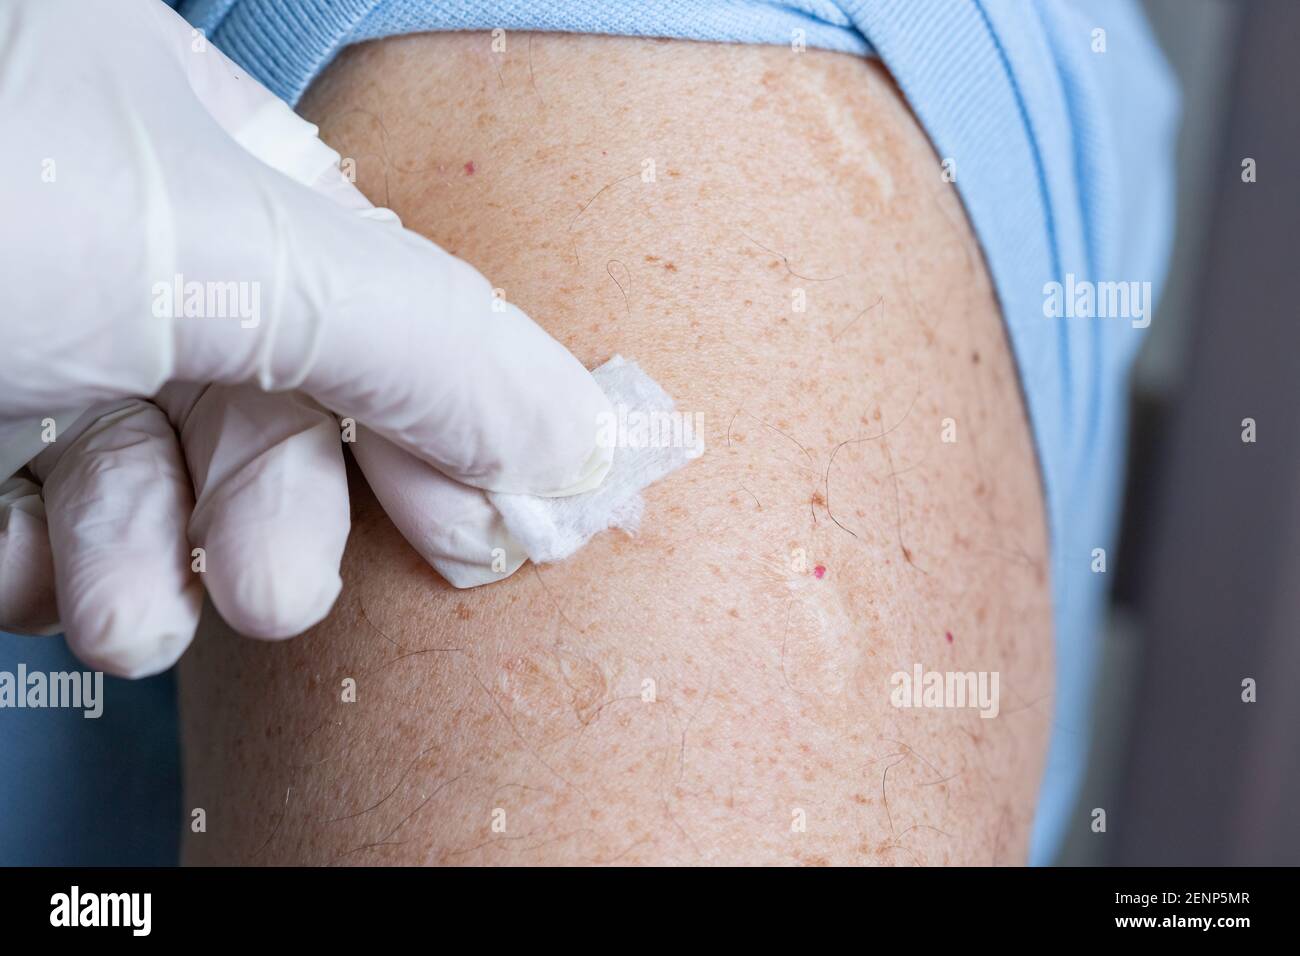 Der Arzt wischt die Haut vor der Impfung oder Injektion mit einer in  Alkohol getränkten Serviette ab. Desinfektion der Injektionsstelle  Stockfotografie - Alamy